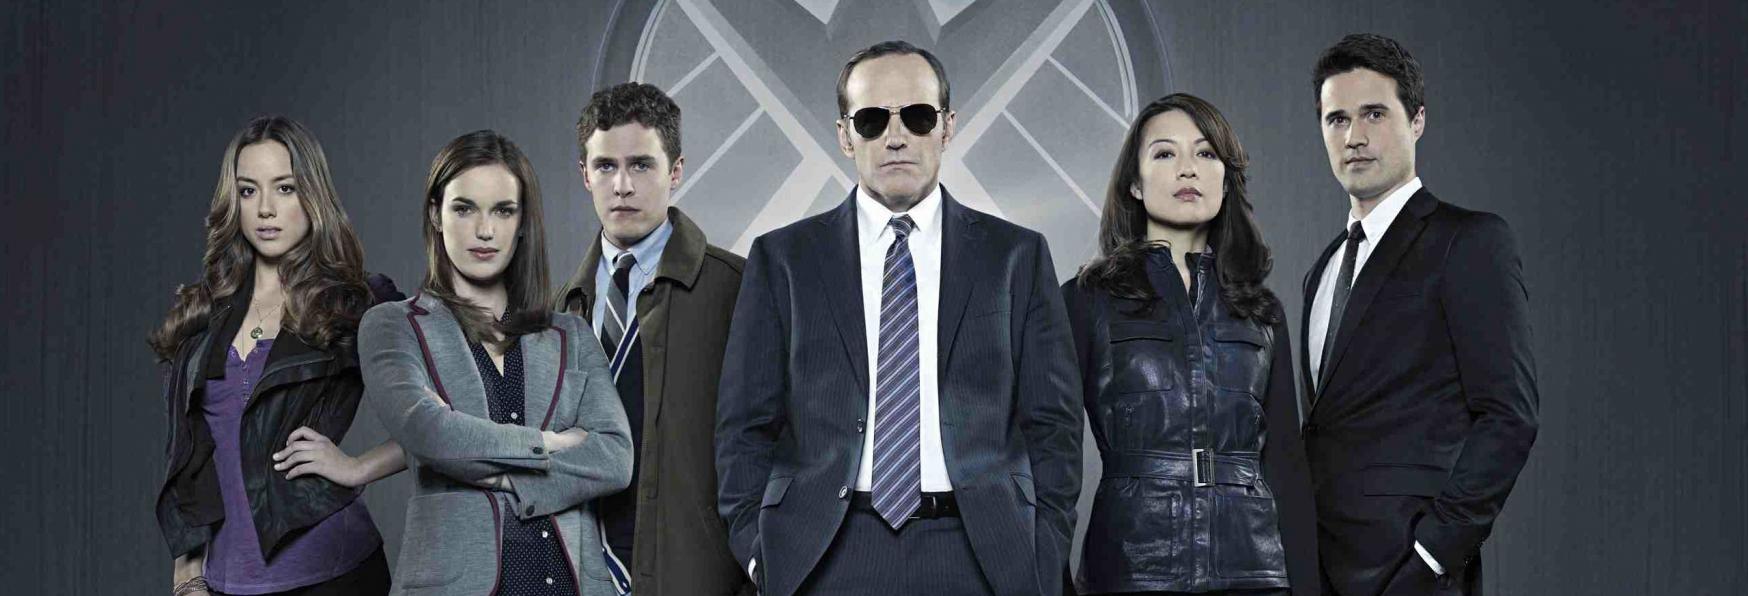 Anche Agents of S.H.I.E.L.D. non sarà più Disponibile su Netflix 